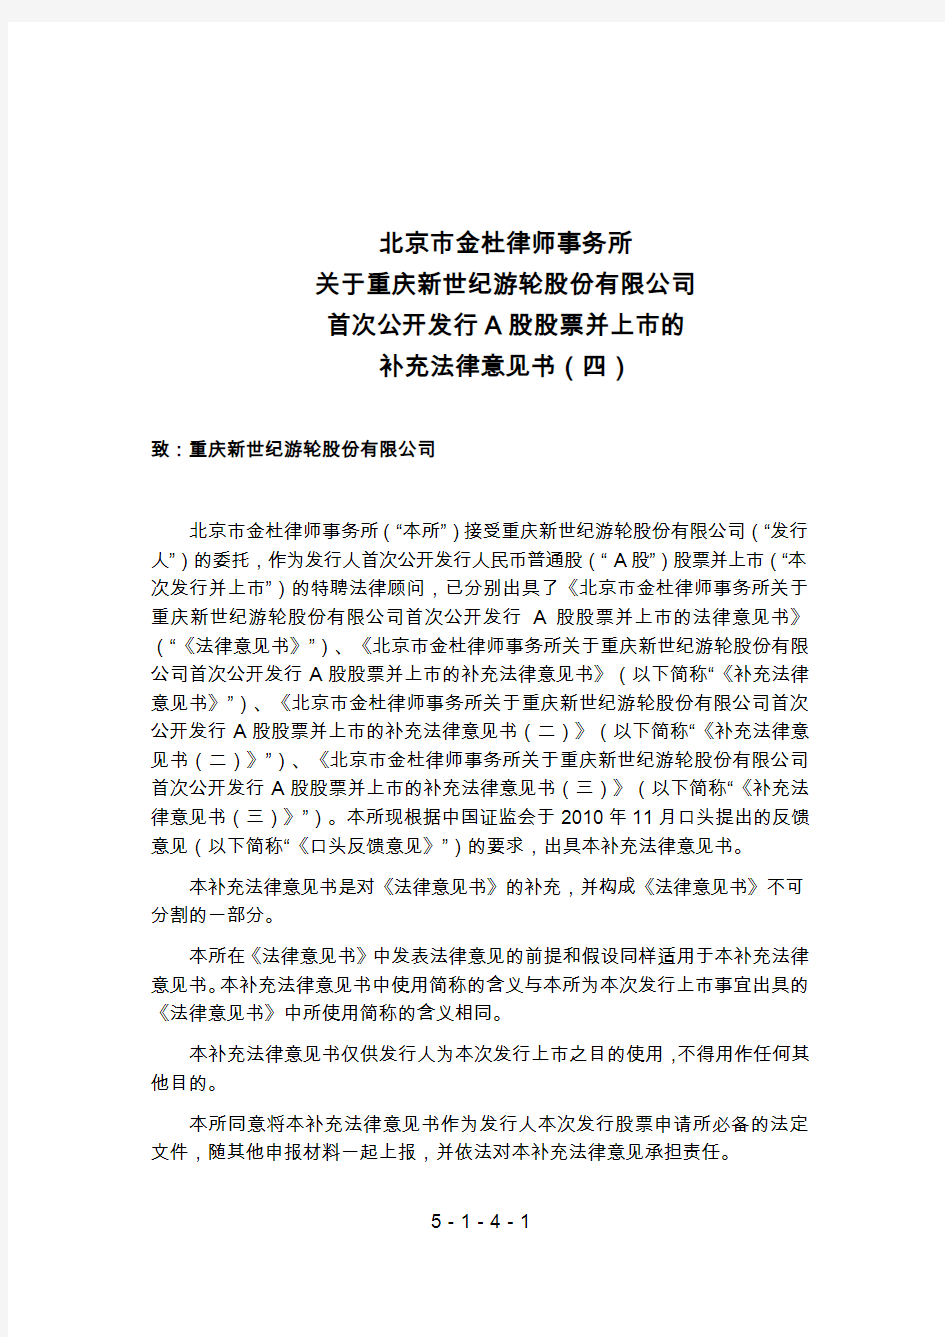 世纪游轮：北京市金杜律师事务所关于公司首次公开发行A股股票并上市的补充法律意见书(四) 2011-02-11